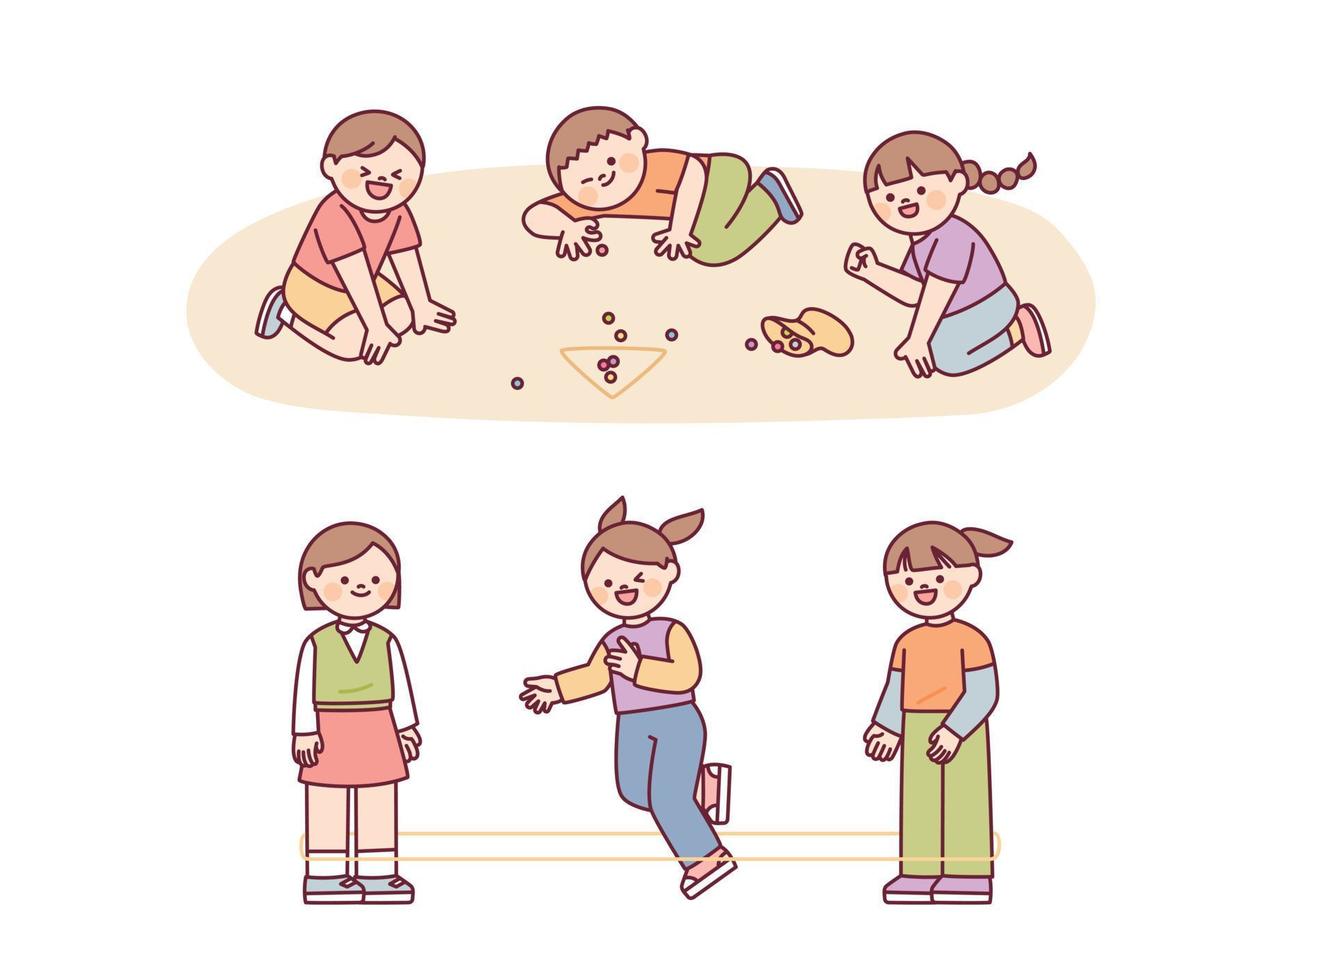 jeu d'enfance coréen. les enfants jouent aux billes et sautent avec des élastiques. vecteur